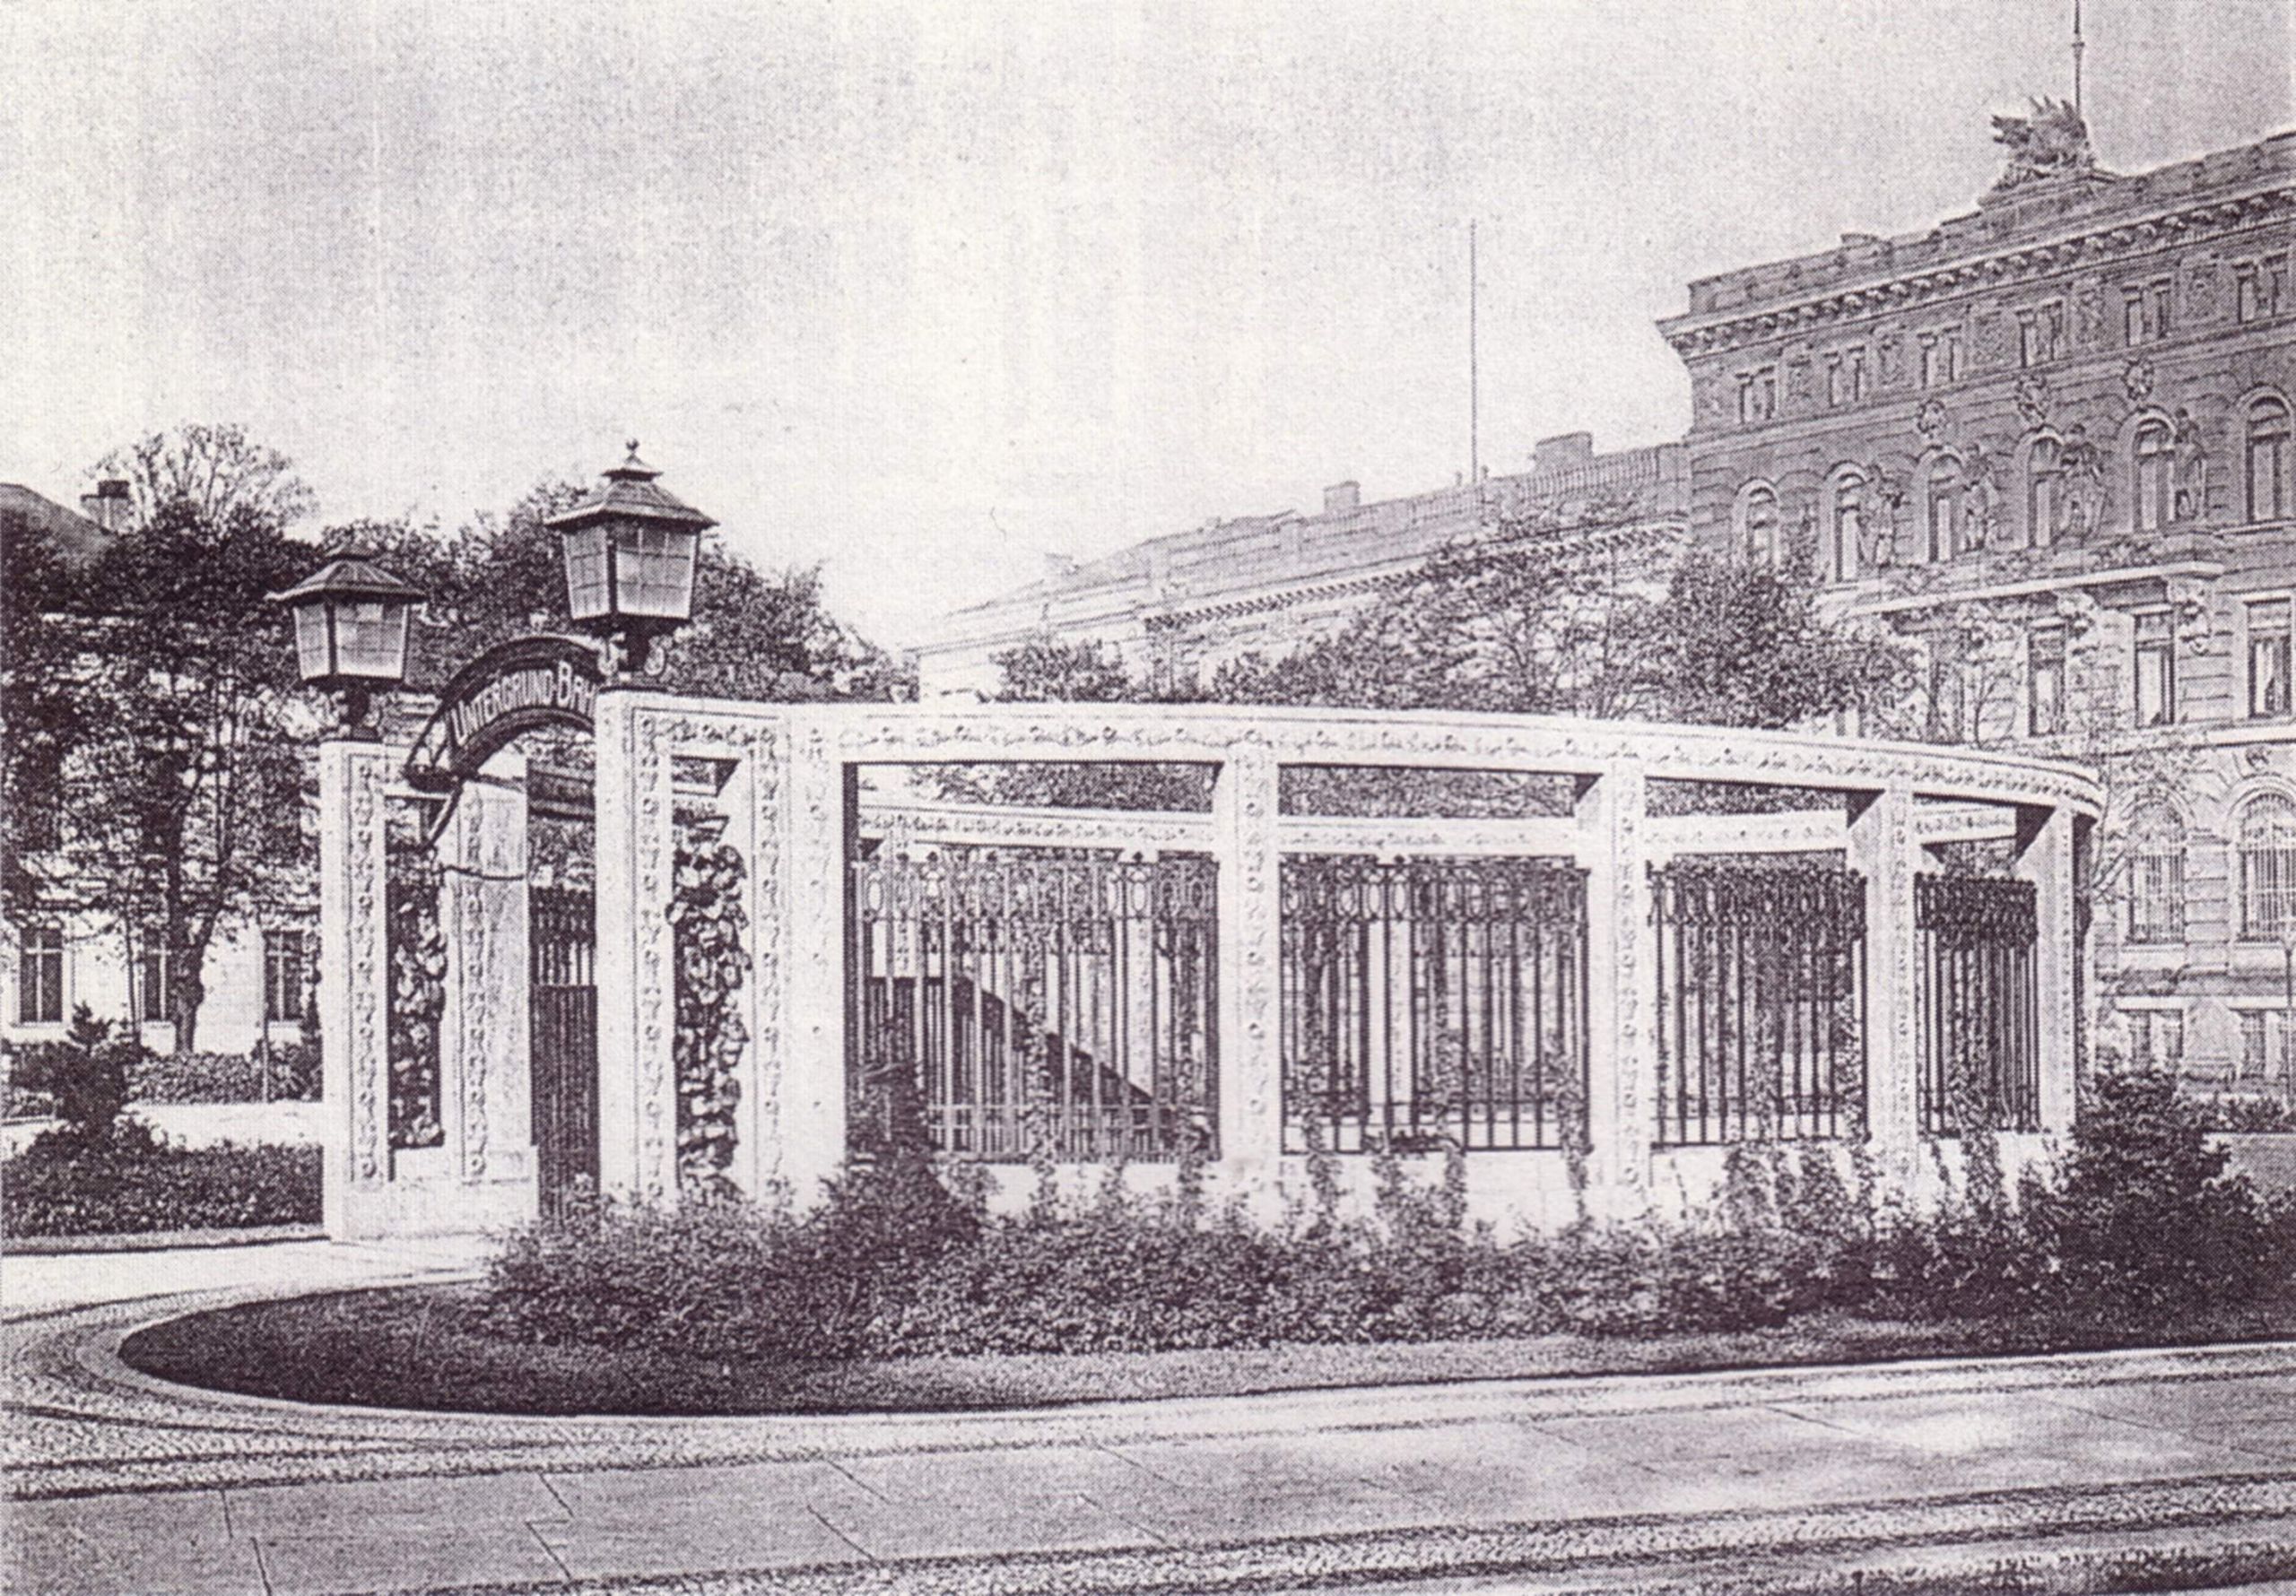 U Bahn Berlin Kaiserhof 1910